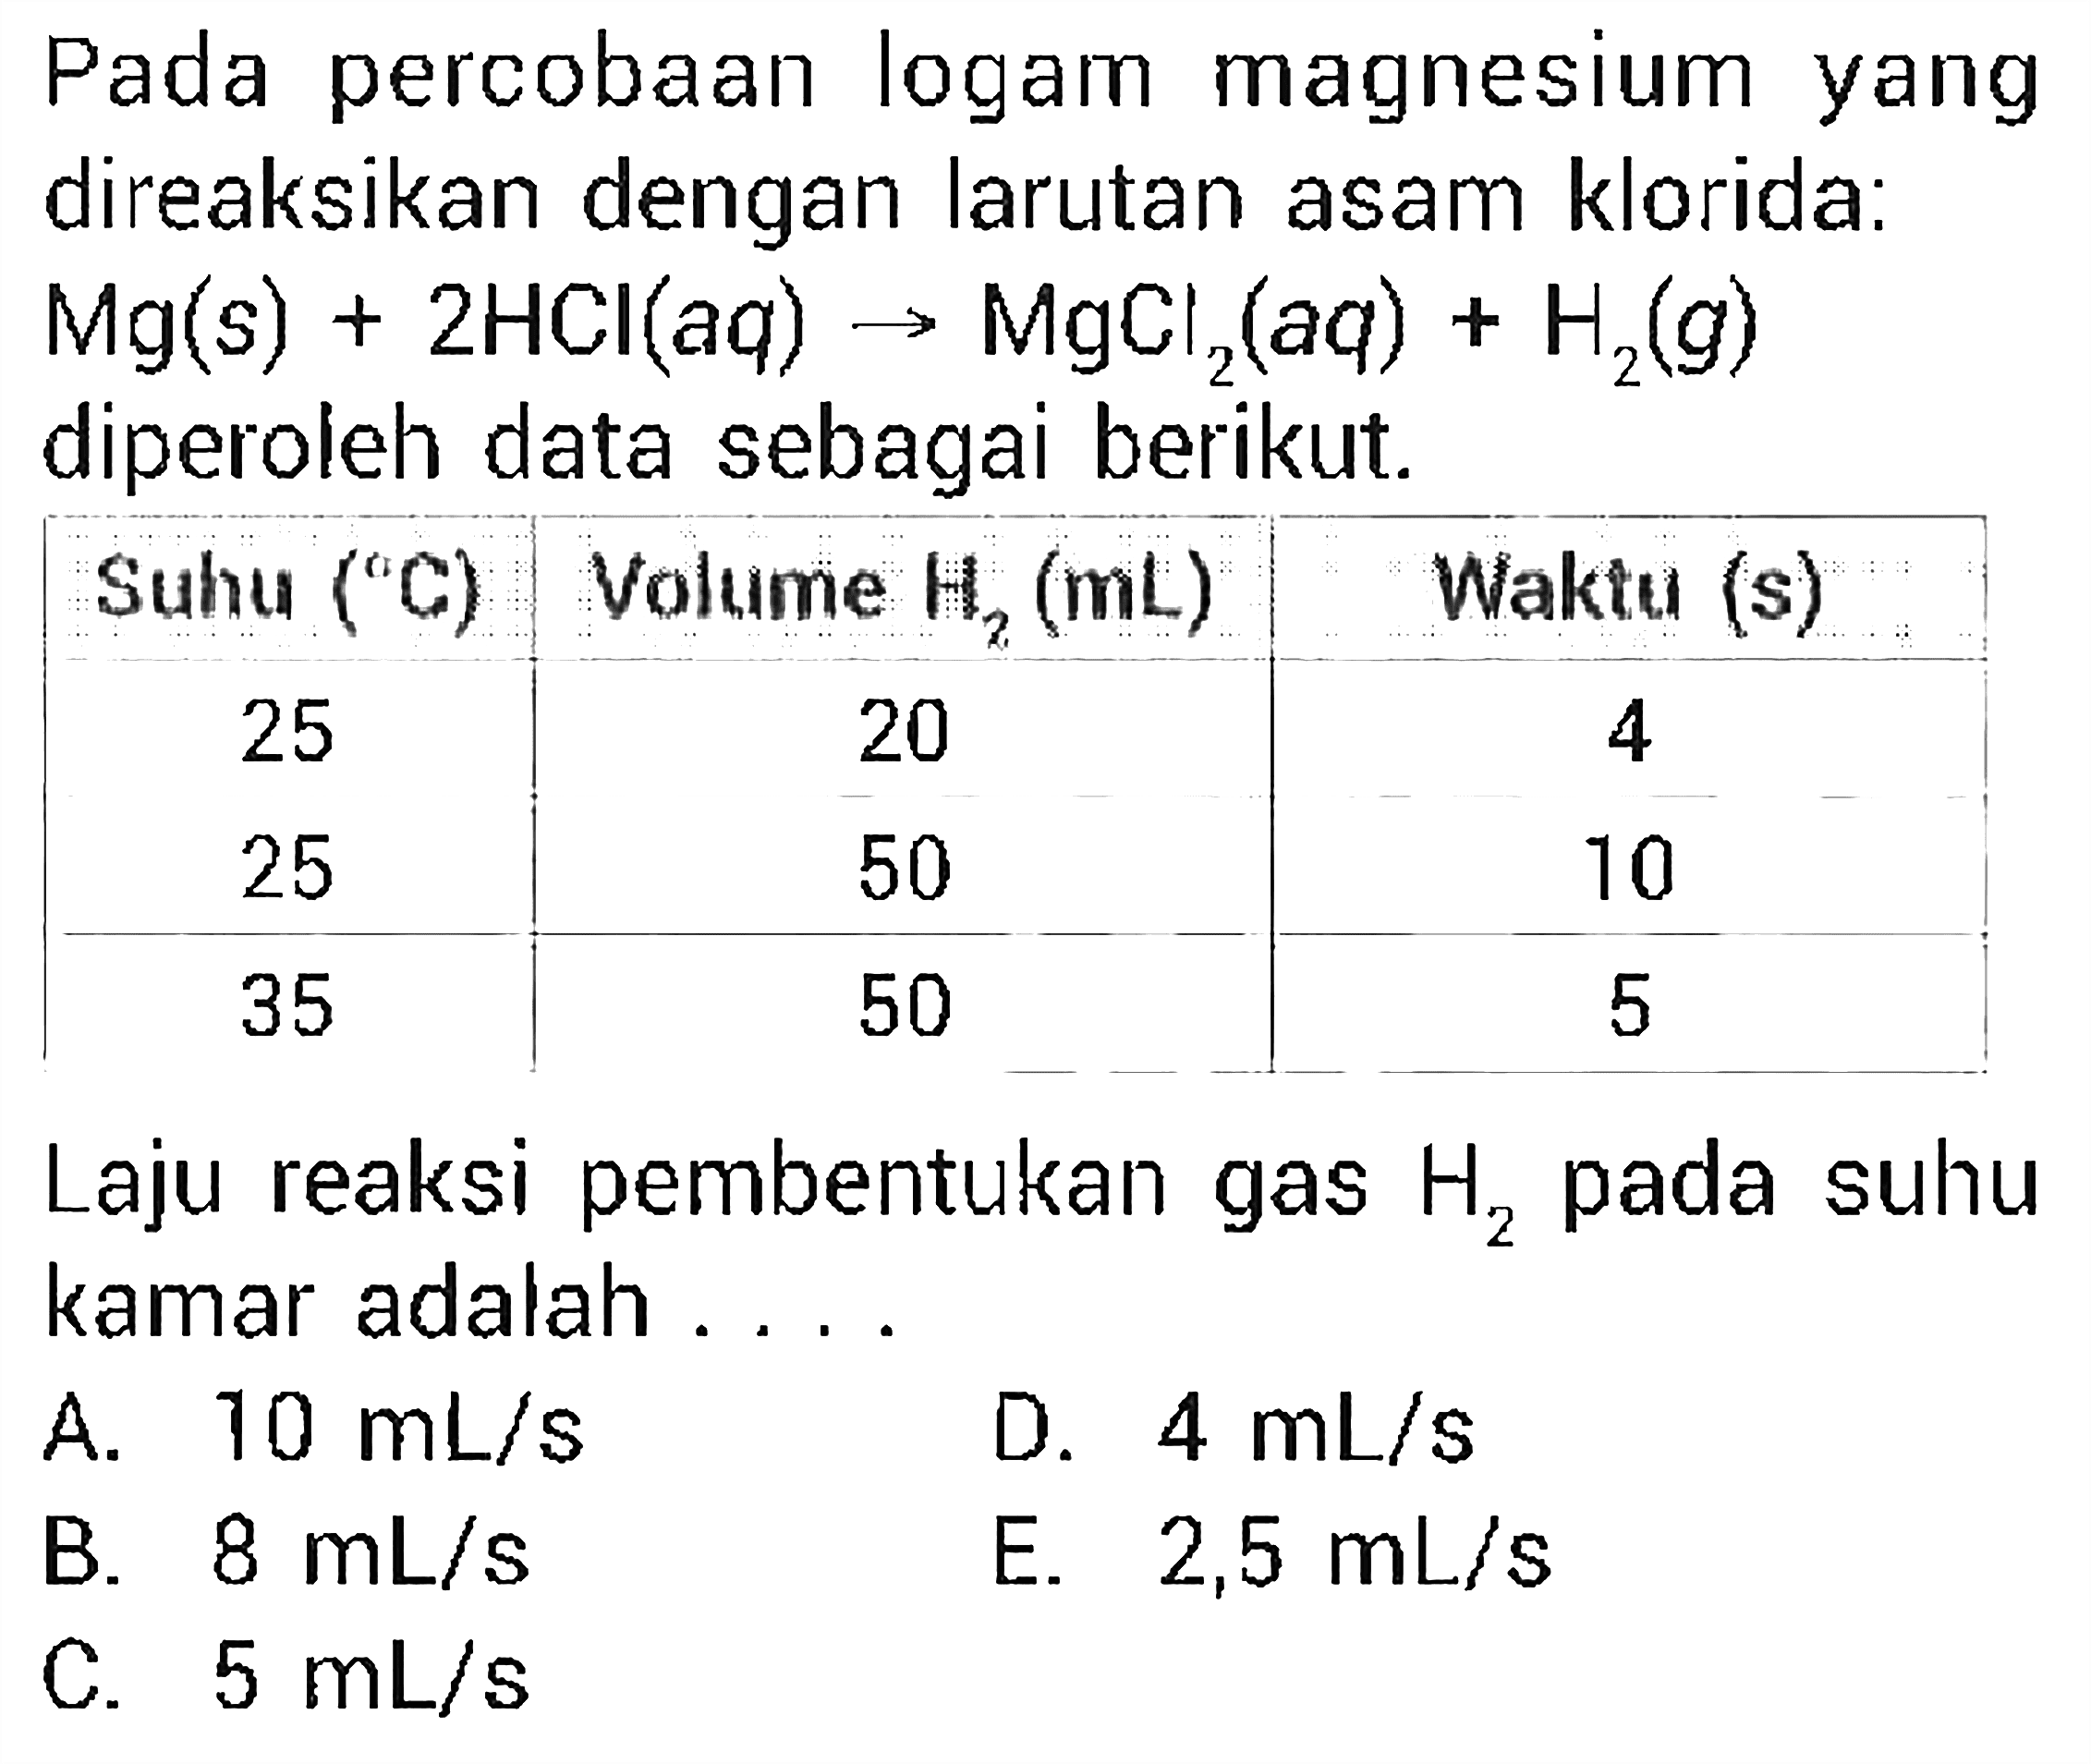 Pada percobaan logam magnesium yang direaksikan dengan larutan asam klorida: Mg(s) + 2HCl(aq) <=> MgCl2(aq) + H2(g)  diperoleh data sebagai berikut. Suhu (C) Volume H2 (mL) Waktu (s) 25 20 4 25 50 10 35 50 5 Laju reaksi pembentukan gas H2 pada suhu kamar adalah ....  